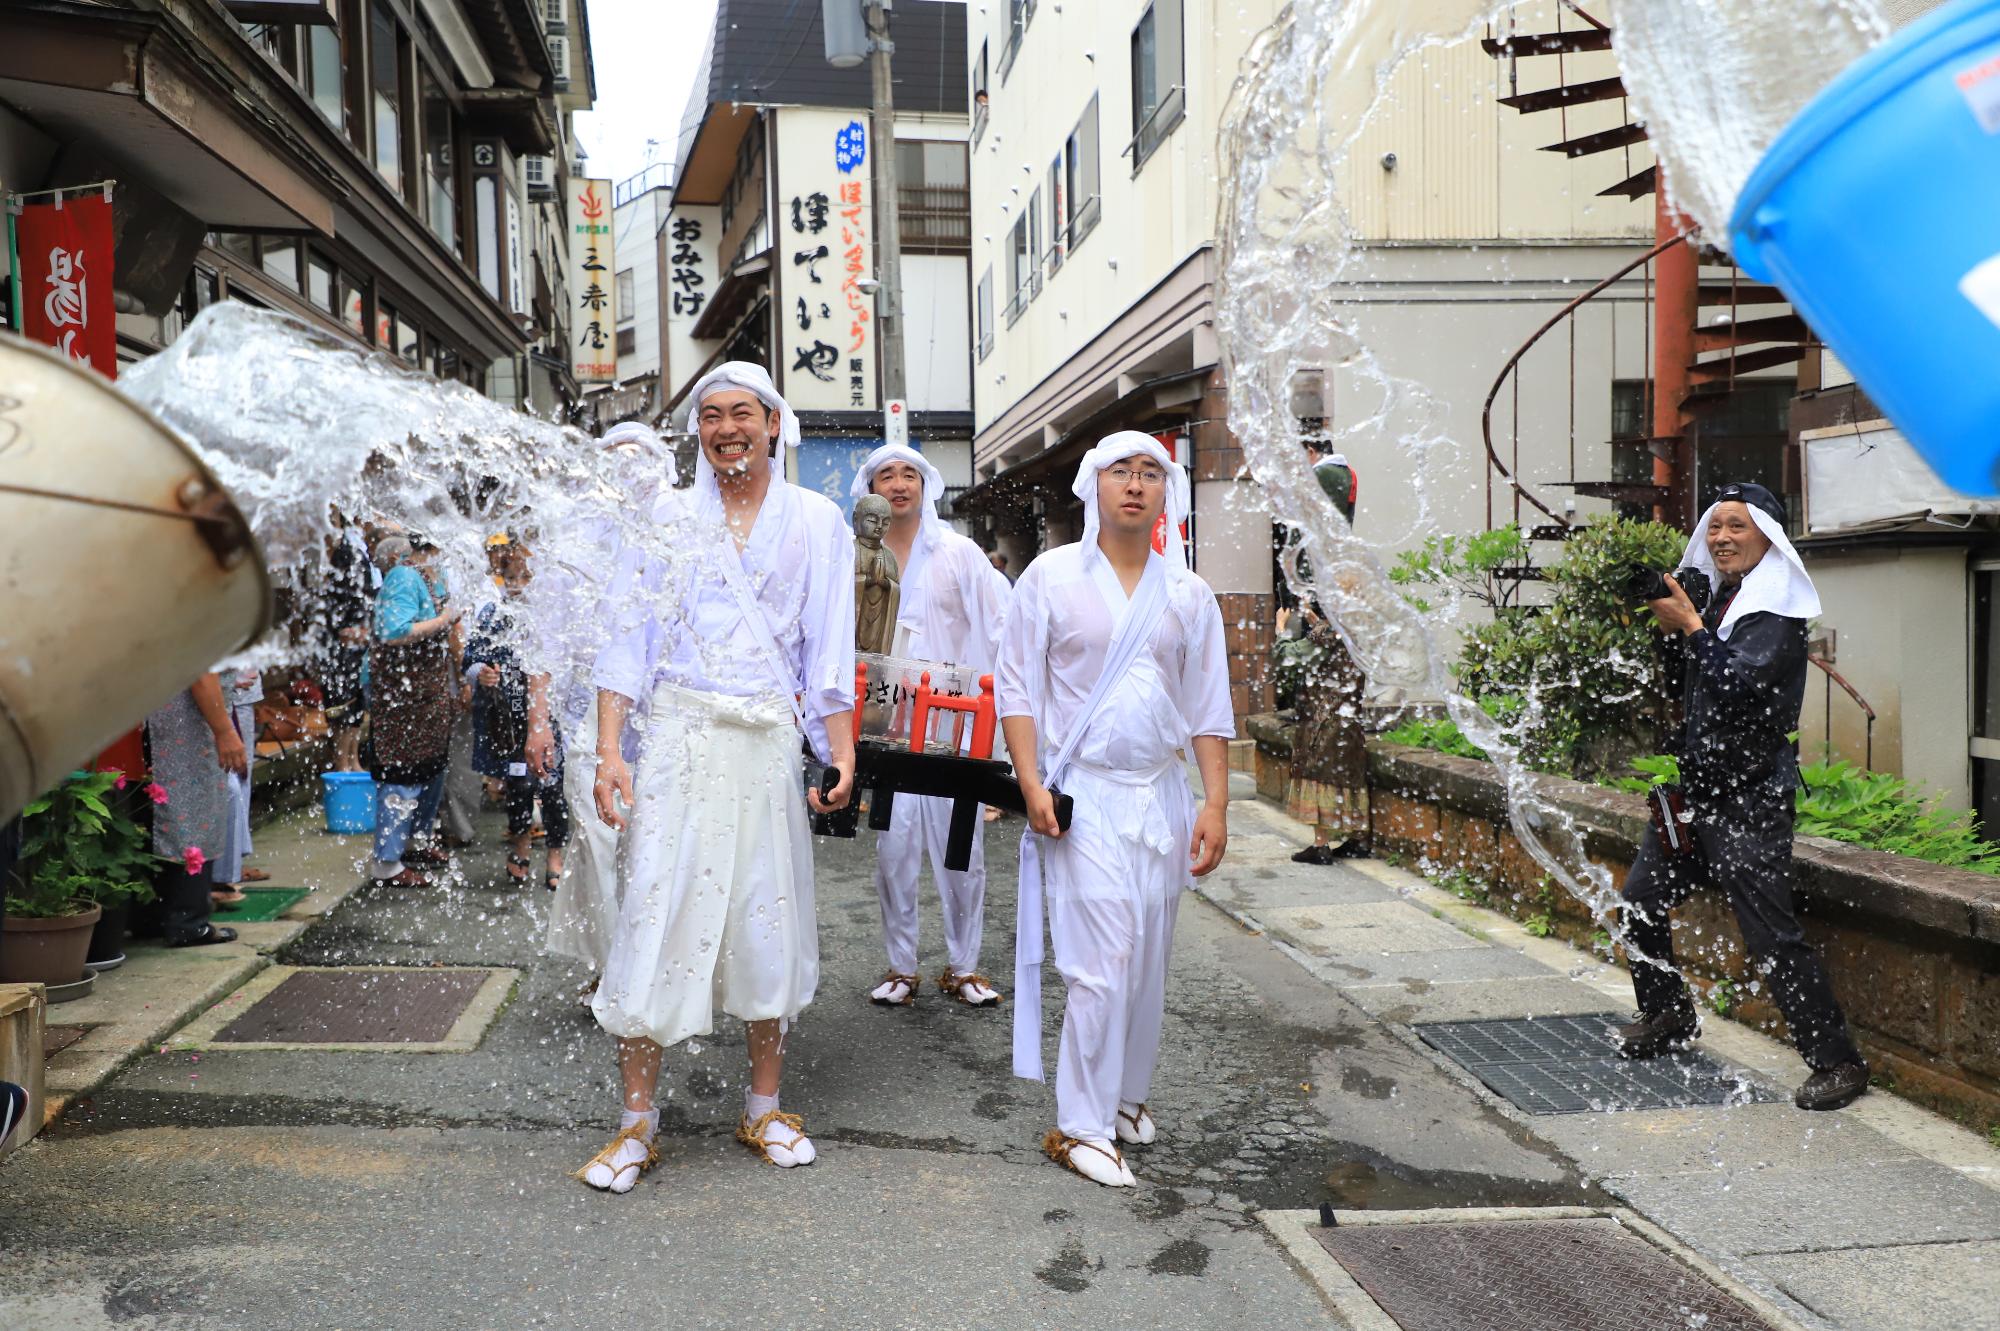 温泉街で地蔵神輿を持った白装束の姿の若者に道路の両脇から温泉のお湯がかけられている写真